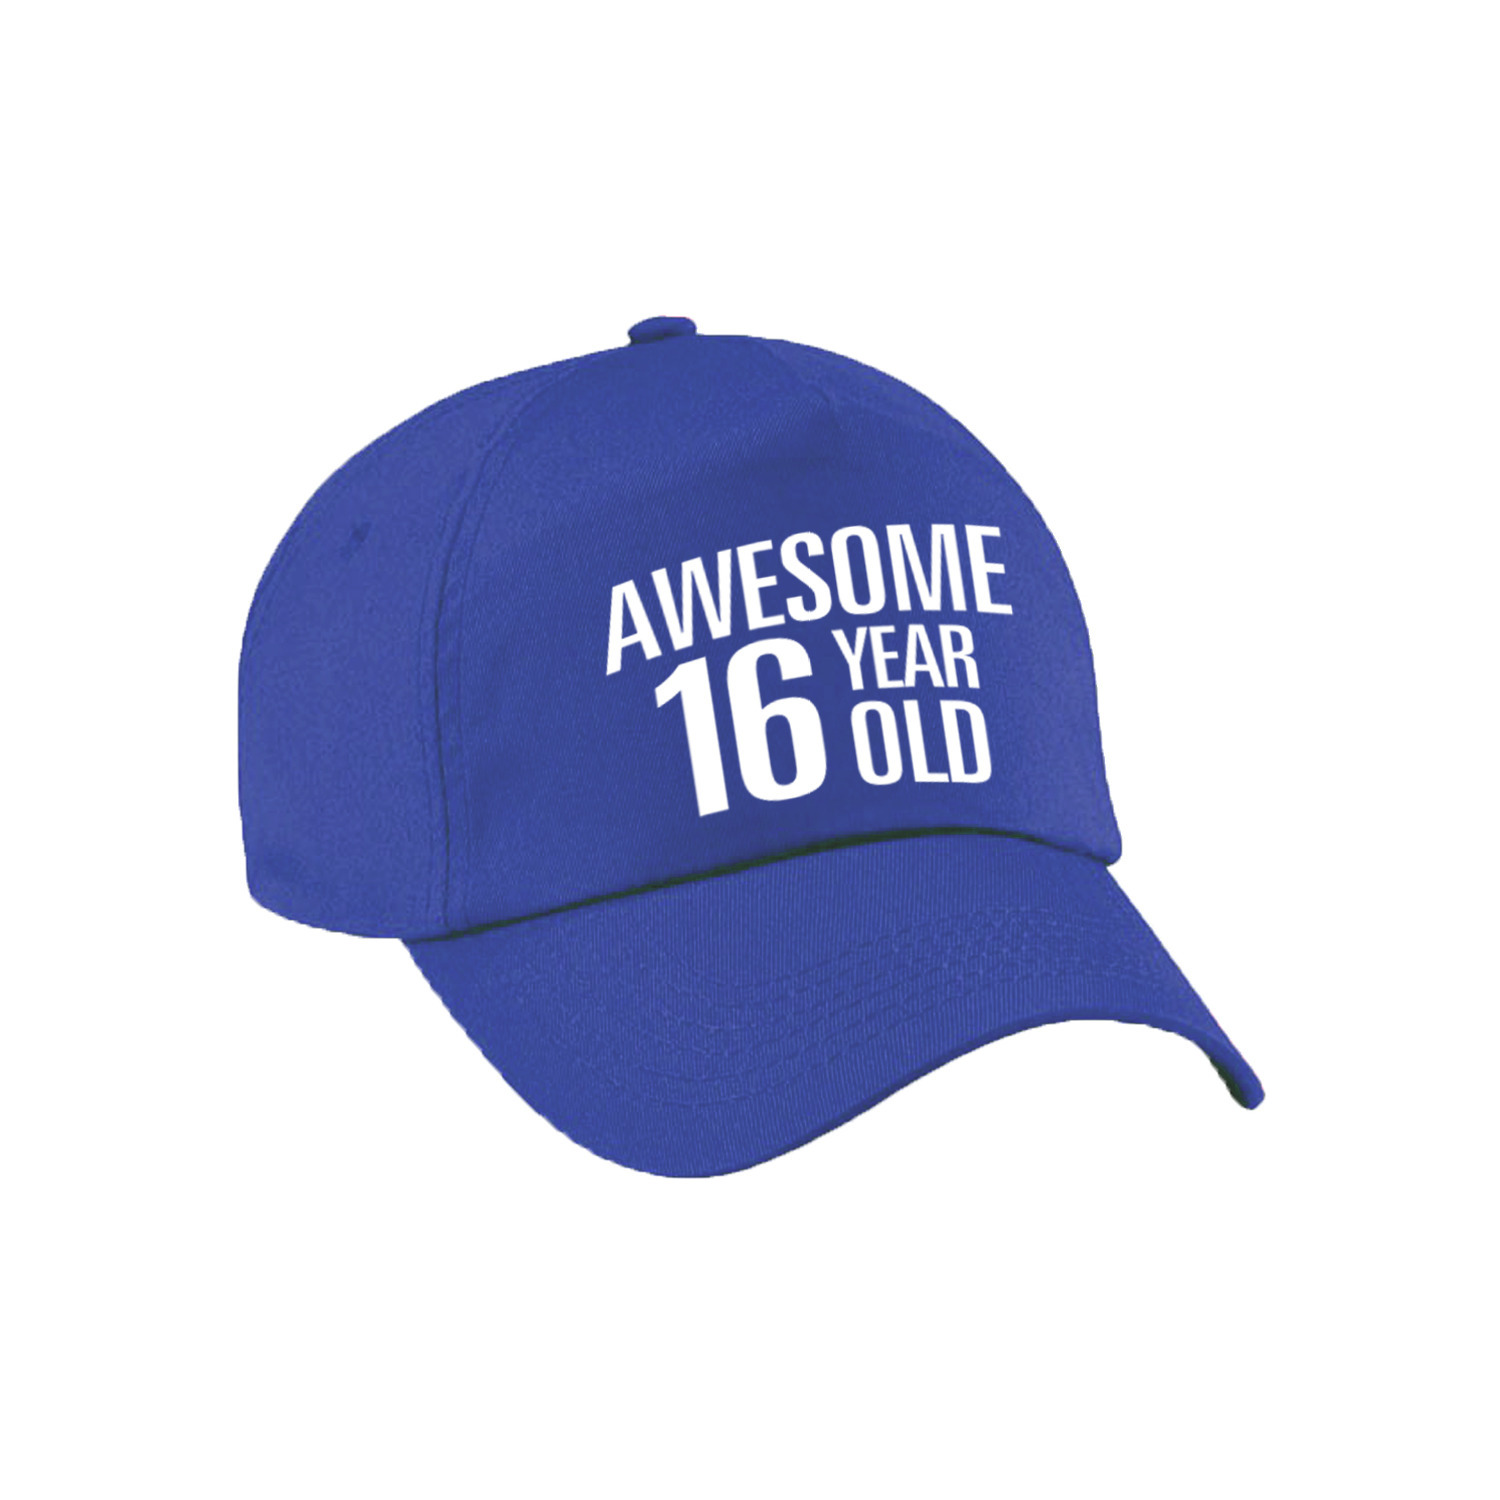 Awesome 16 year old verjaardag pet / cap blauw voor dames en heren